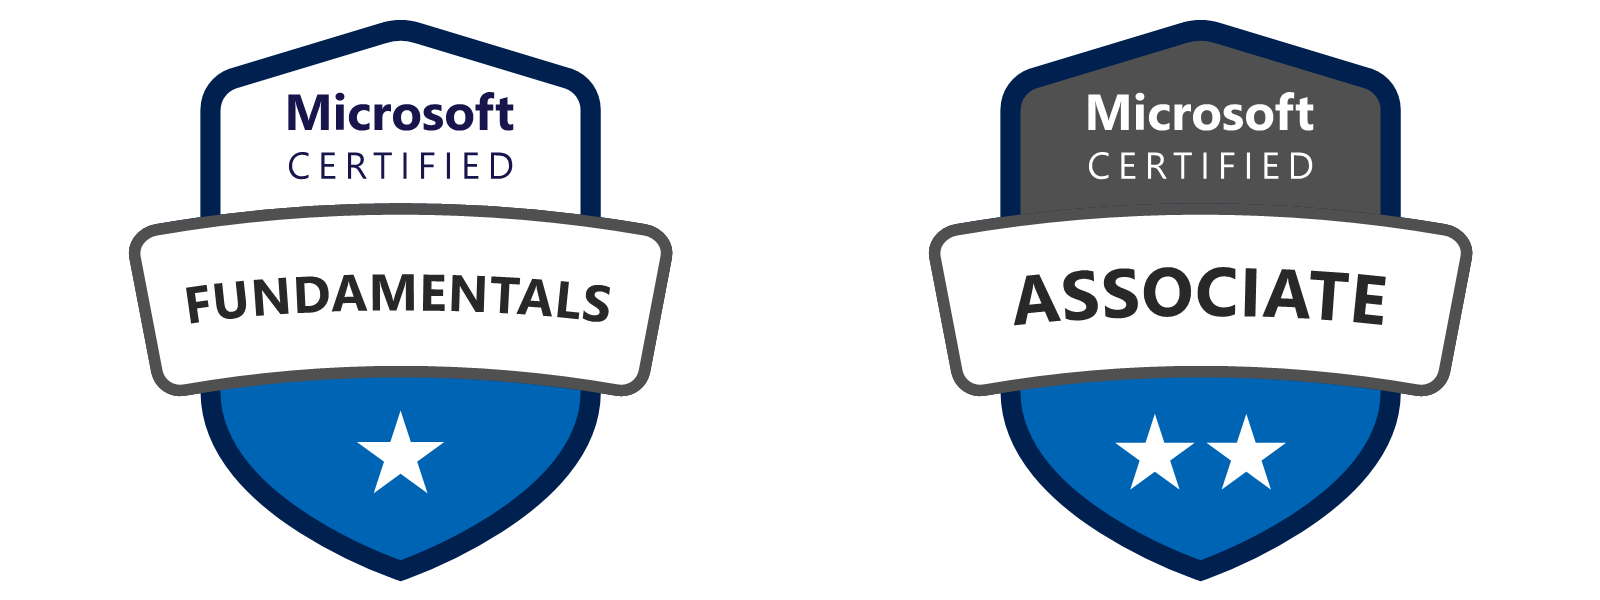 Azure badges